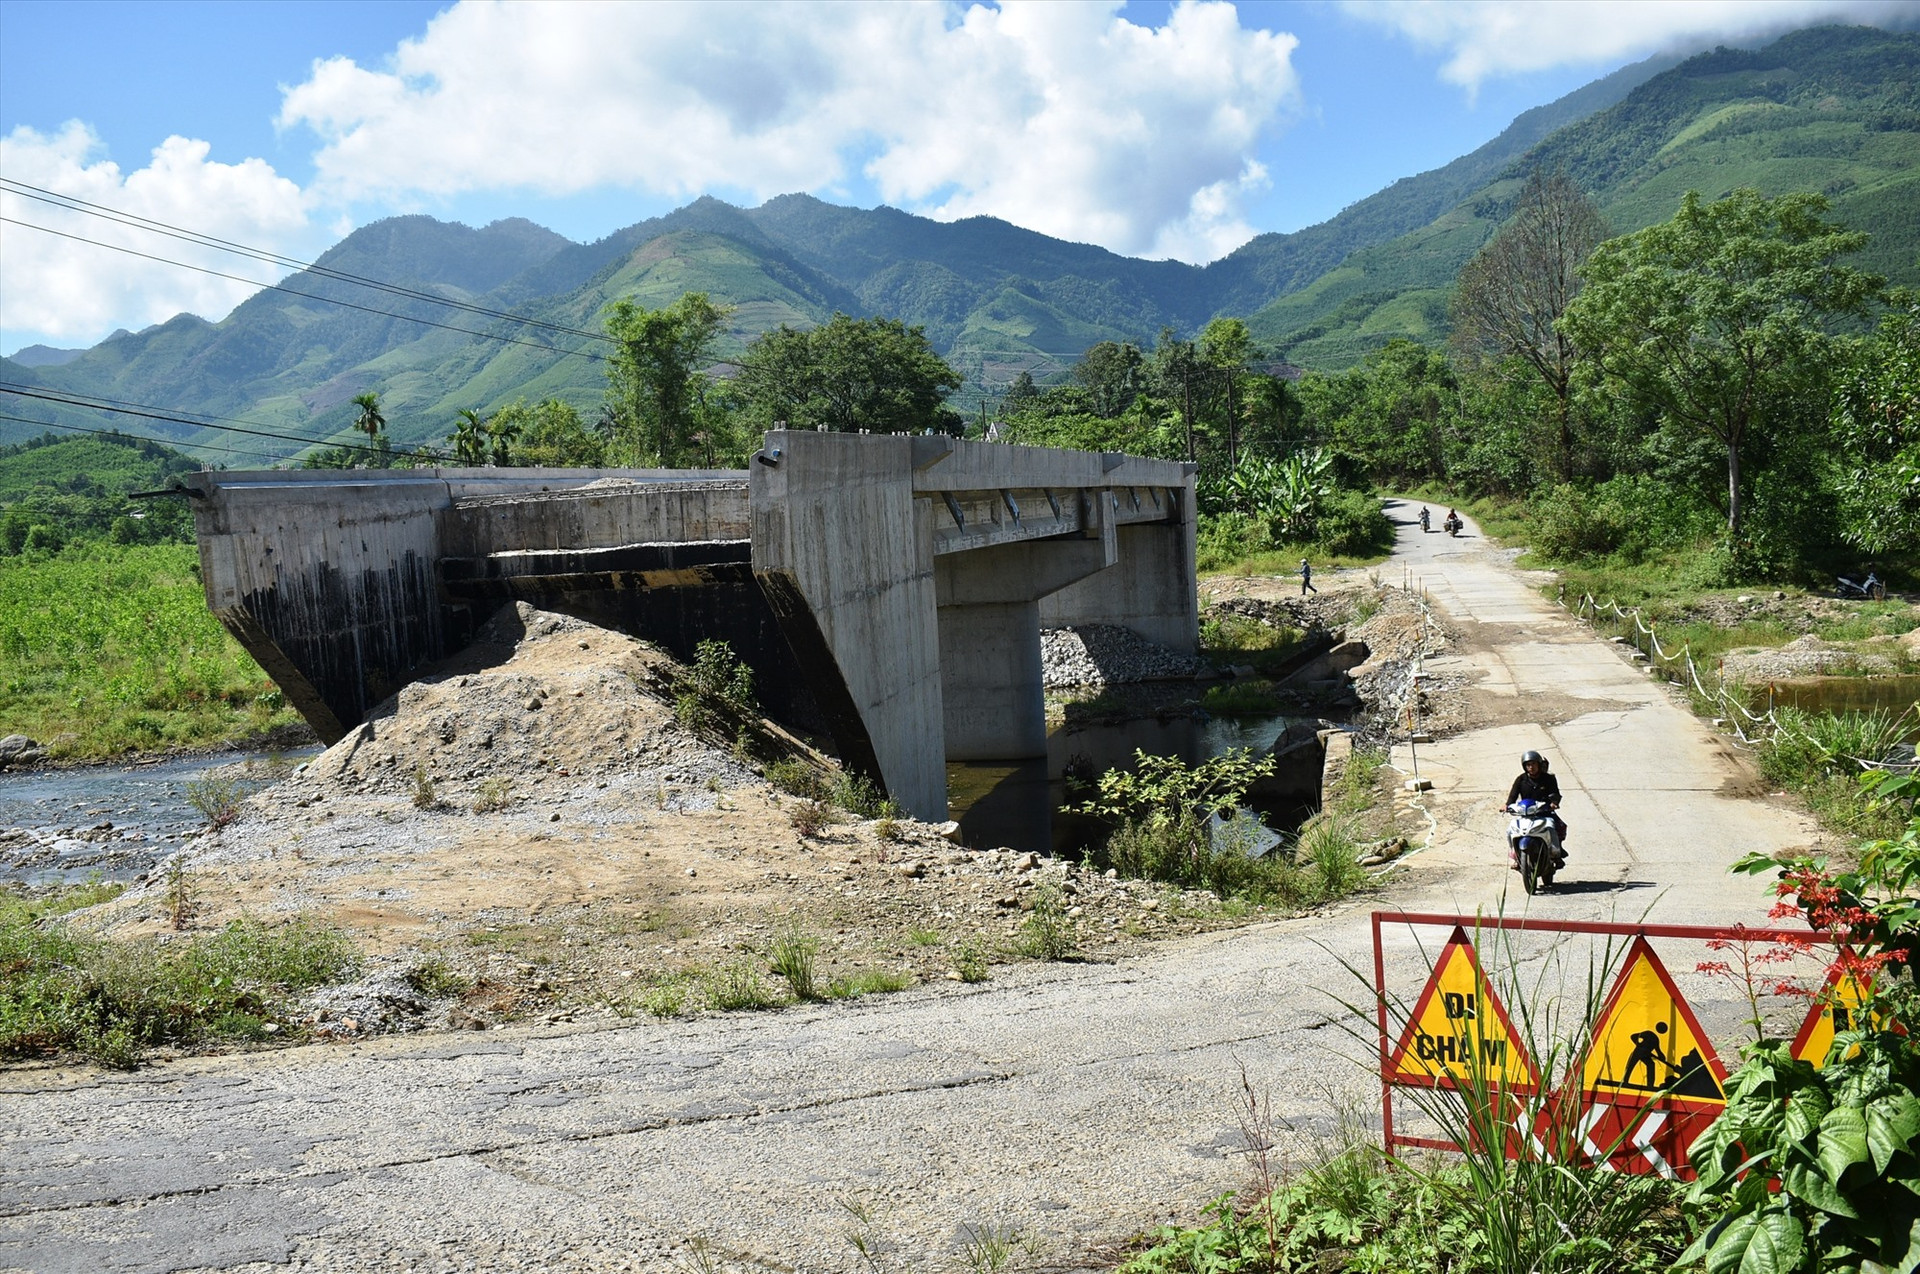 Cầu dân sinh mới bắc qua sông Ngang chưa thể lưu thông vì chưa có đường dẫn. Ảnh: Q.H